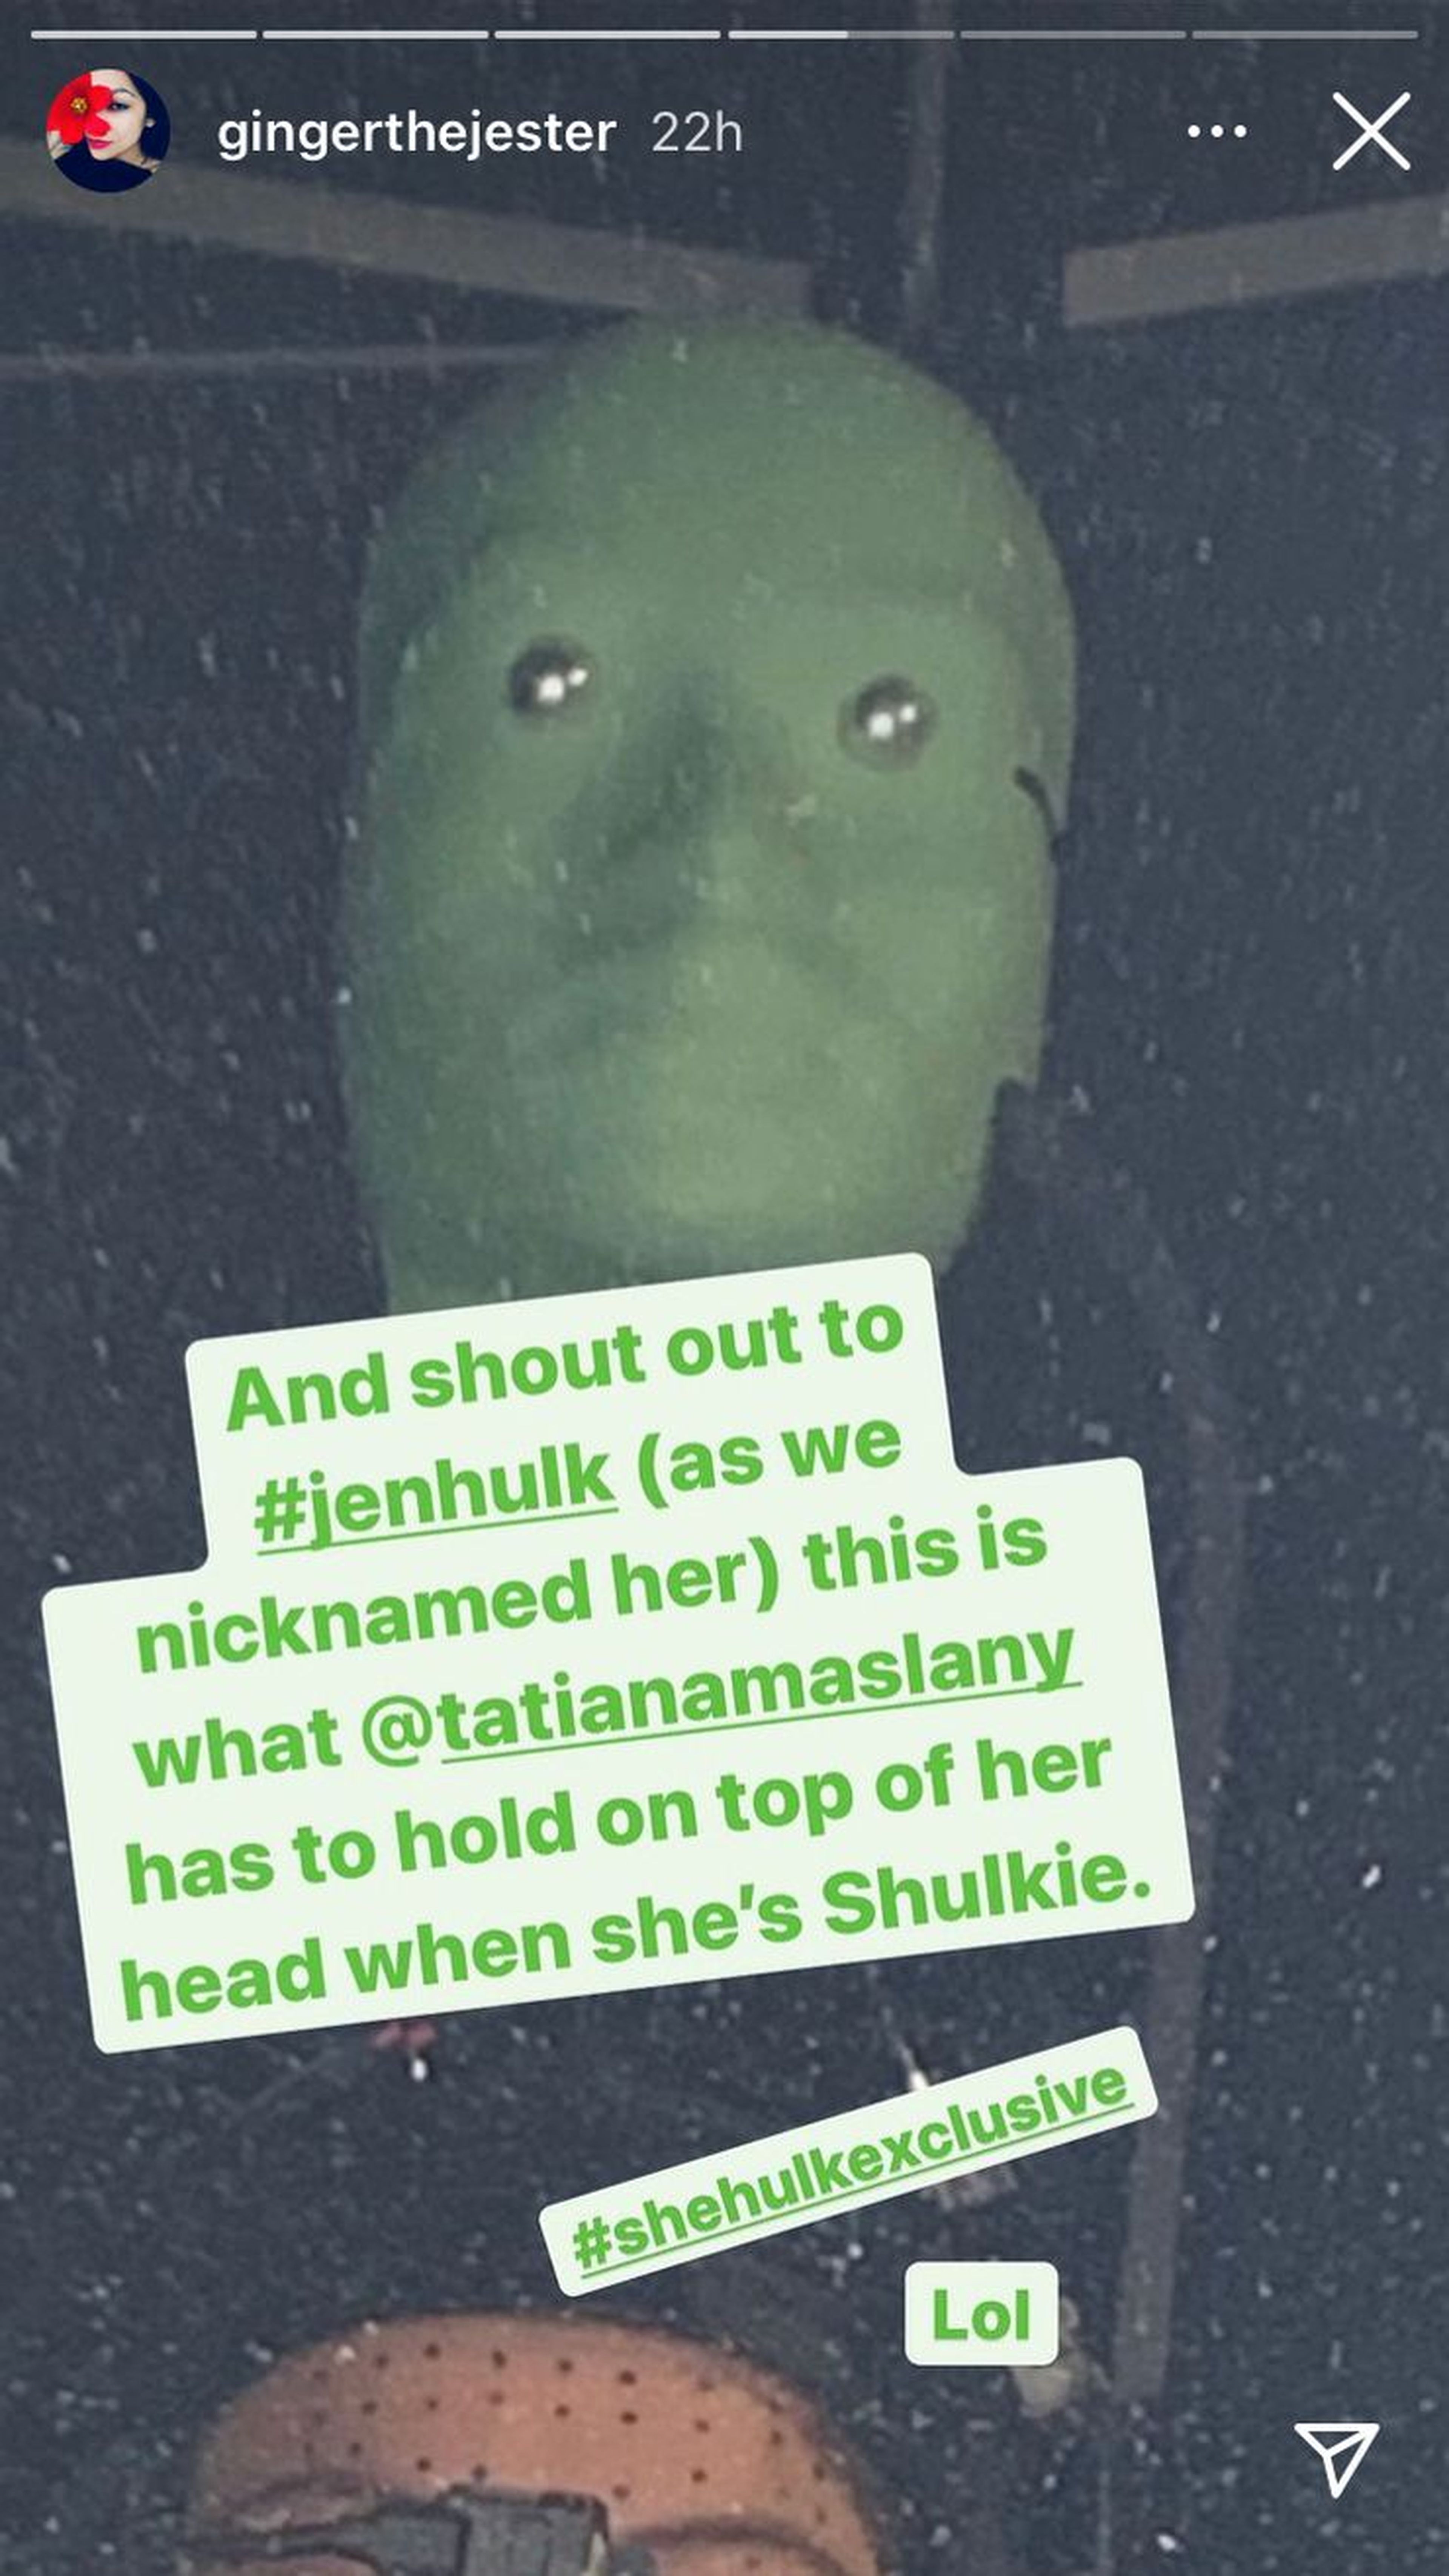 She-Hulk - Instagram de Ginger Gonzaga